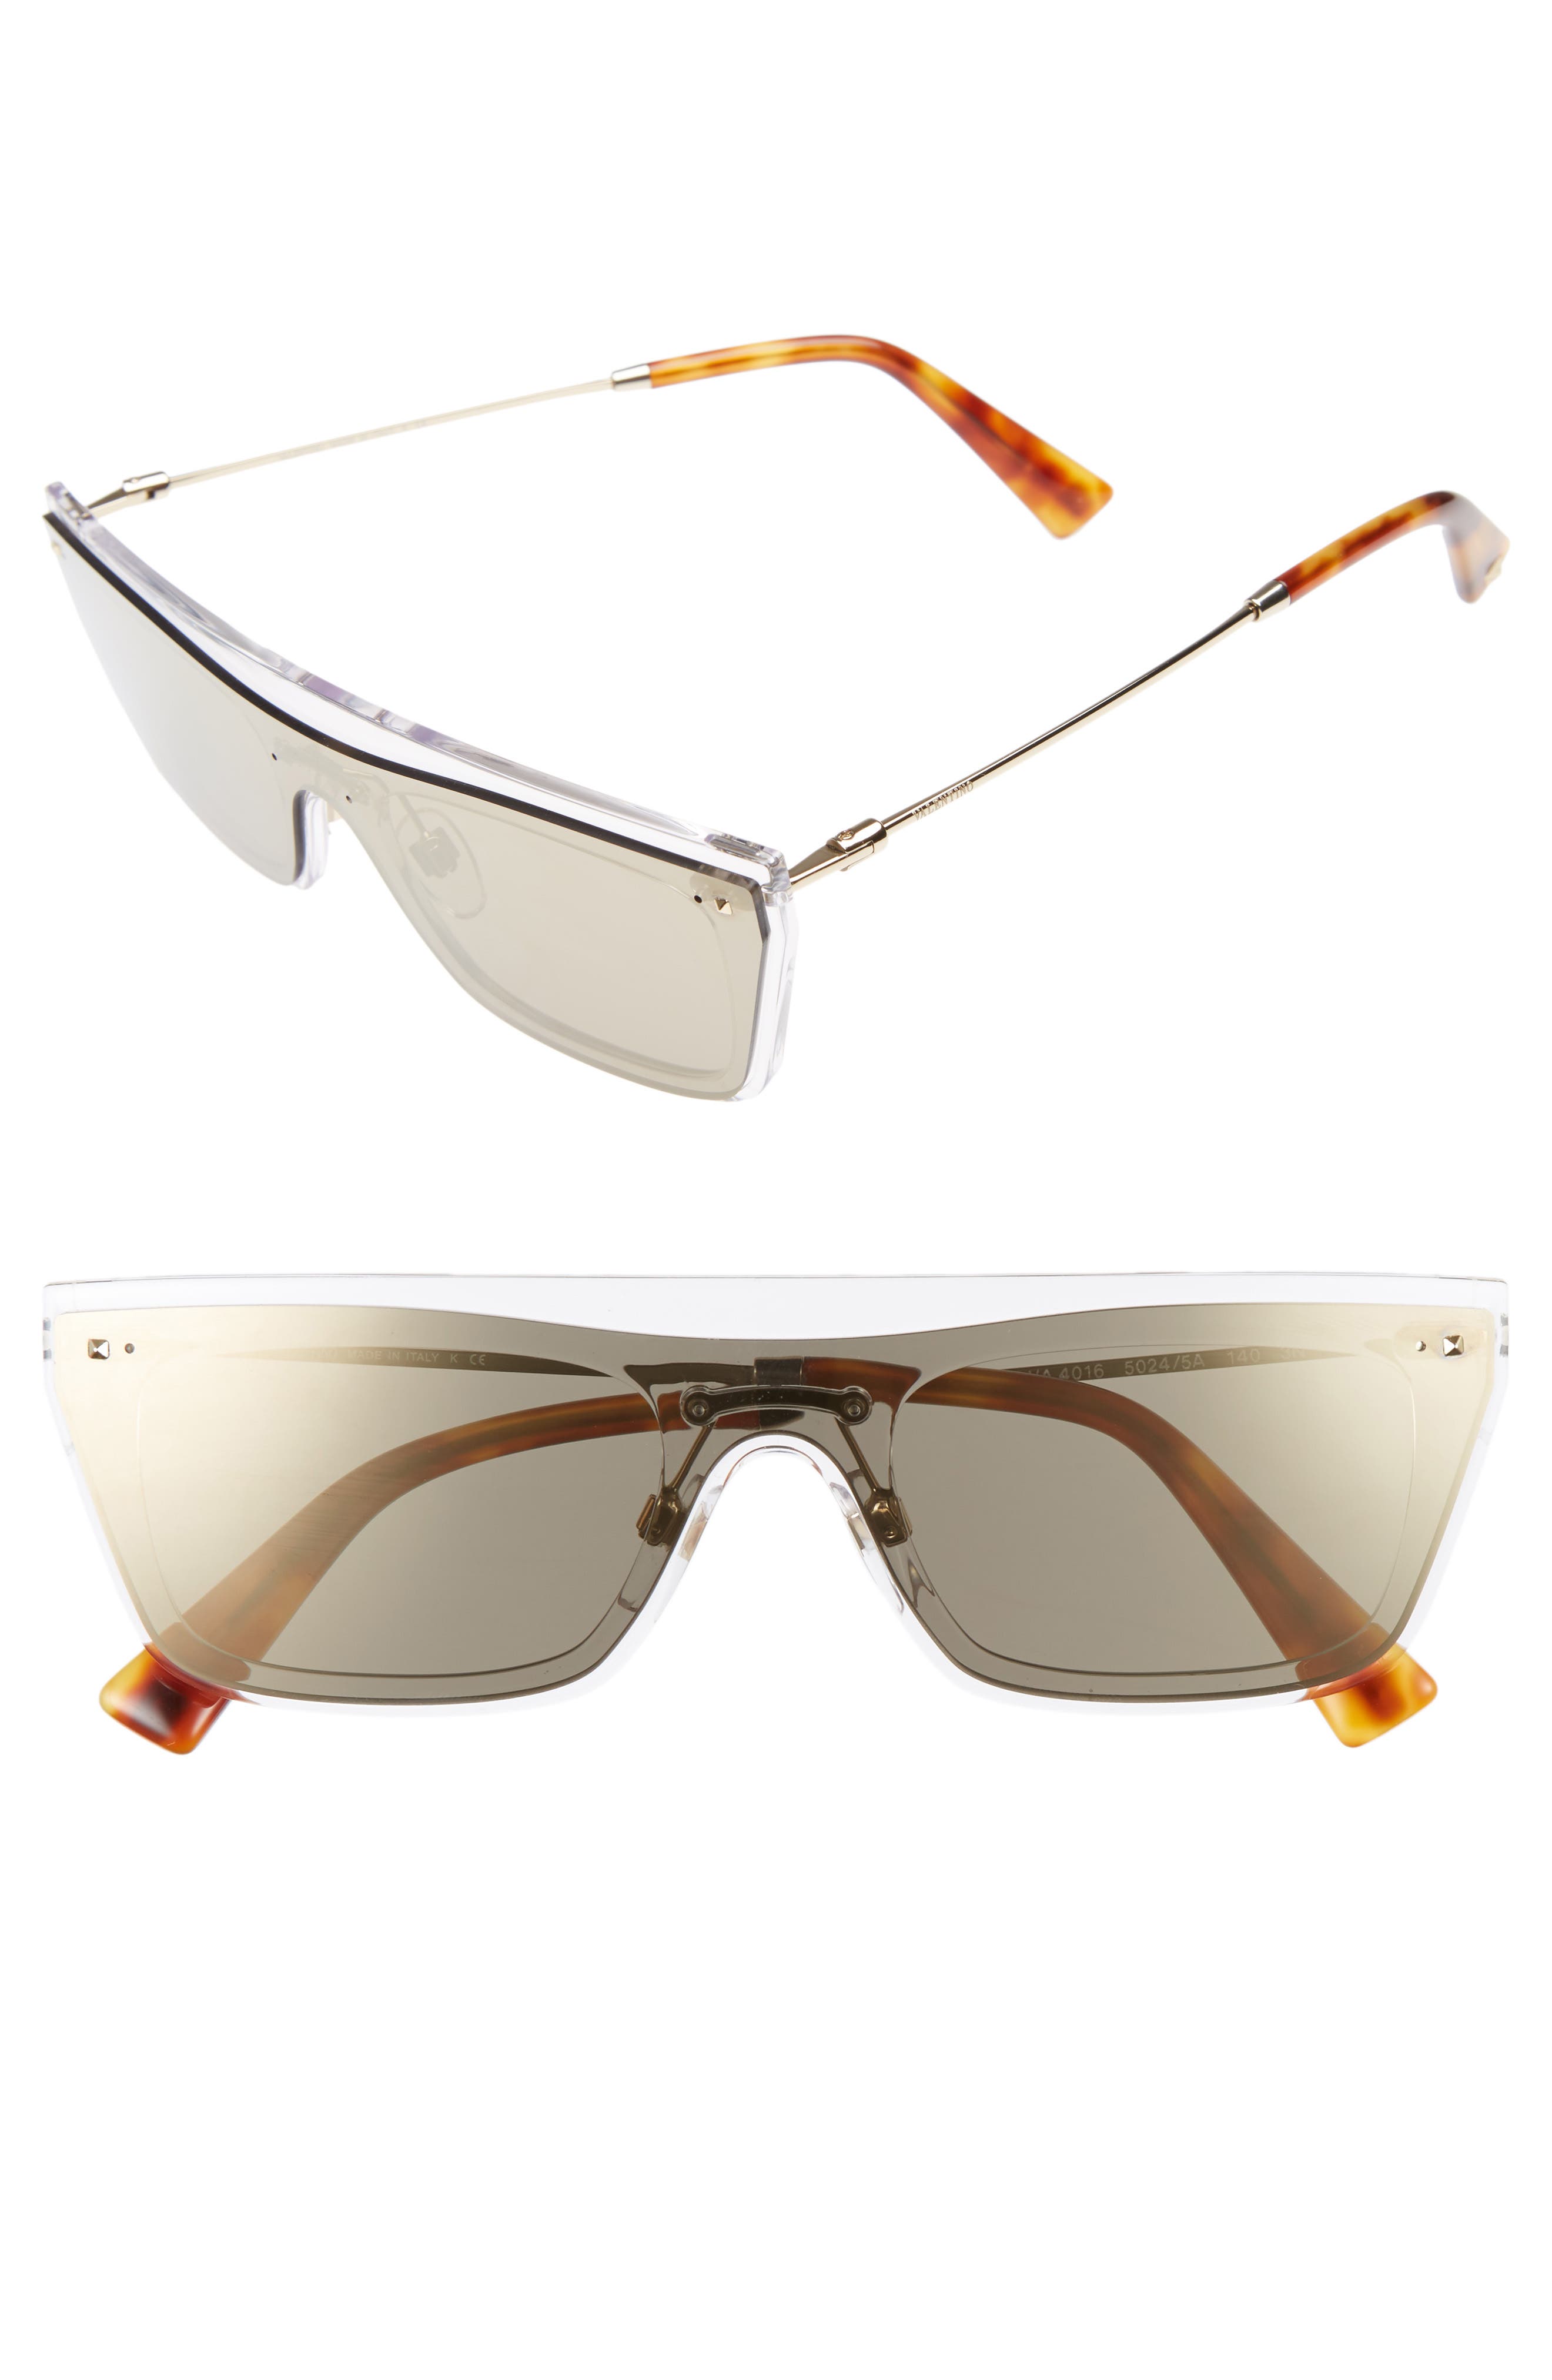 Valentino Rockstud 50mm Rectangular Sunglasses in Mirror Light Gold at Nordstrom